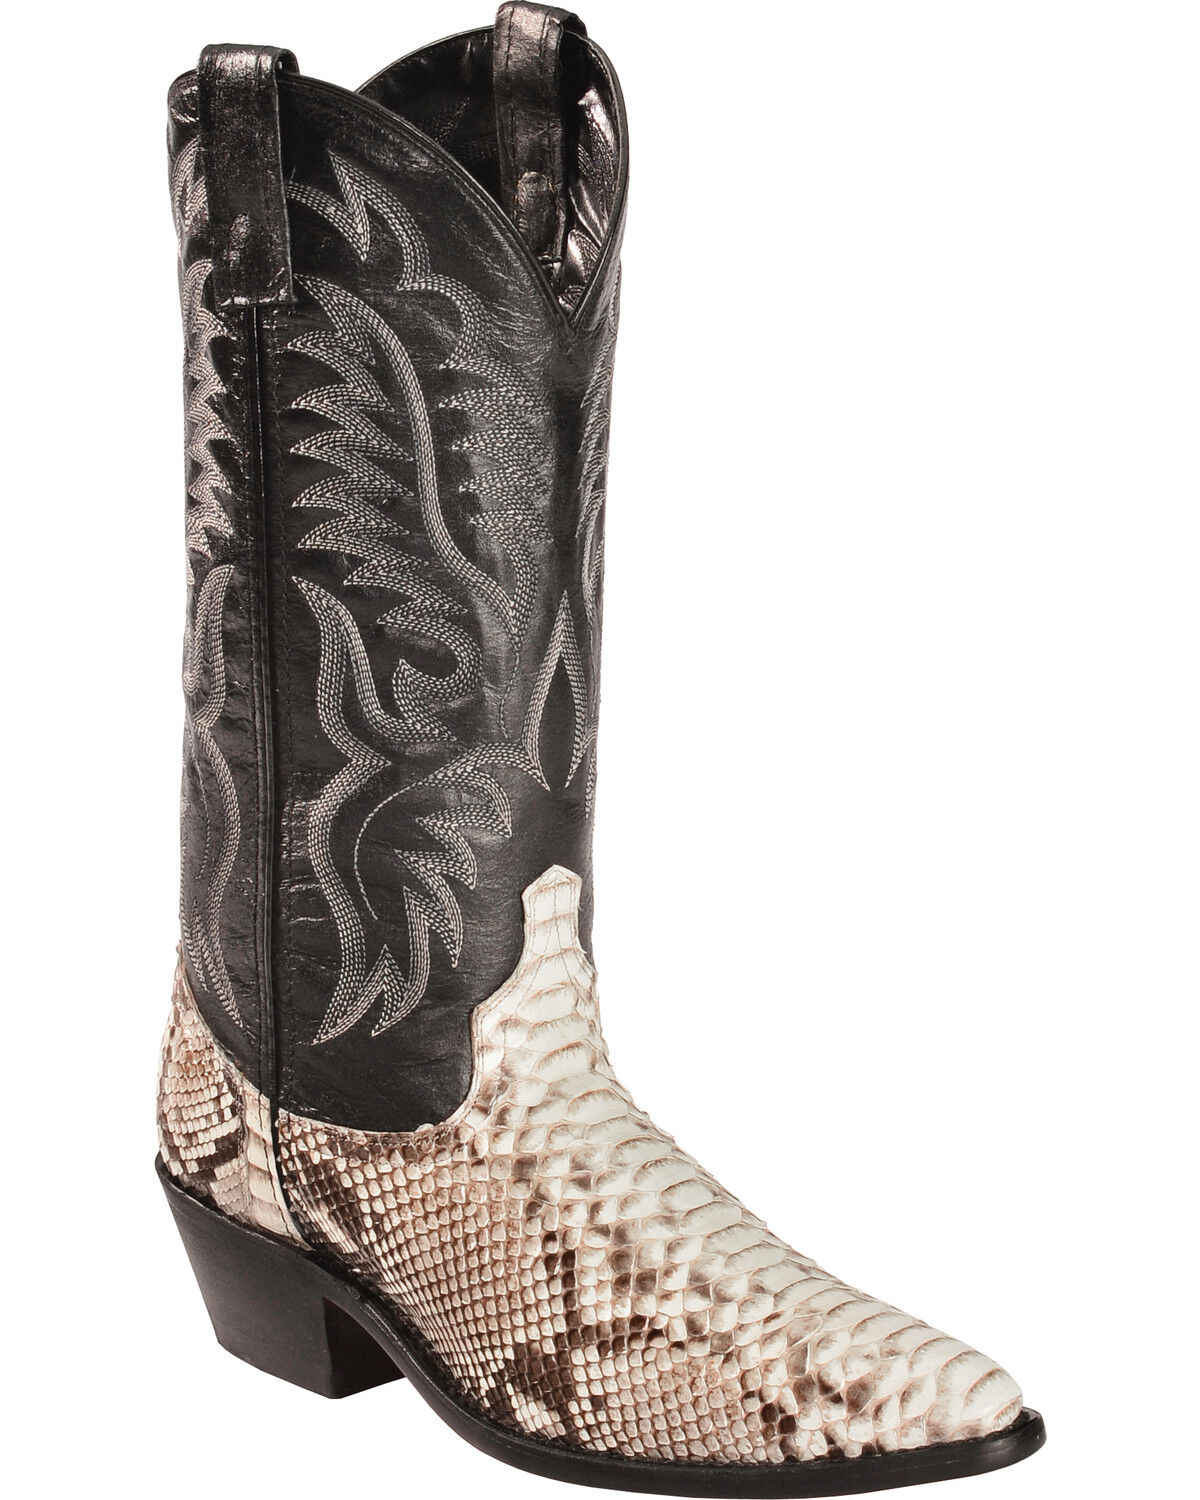 snakeskin boots price